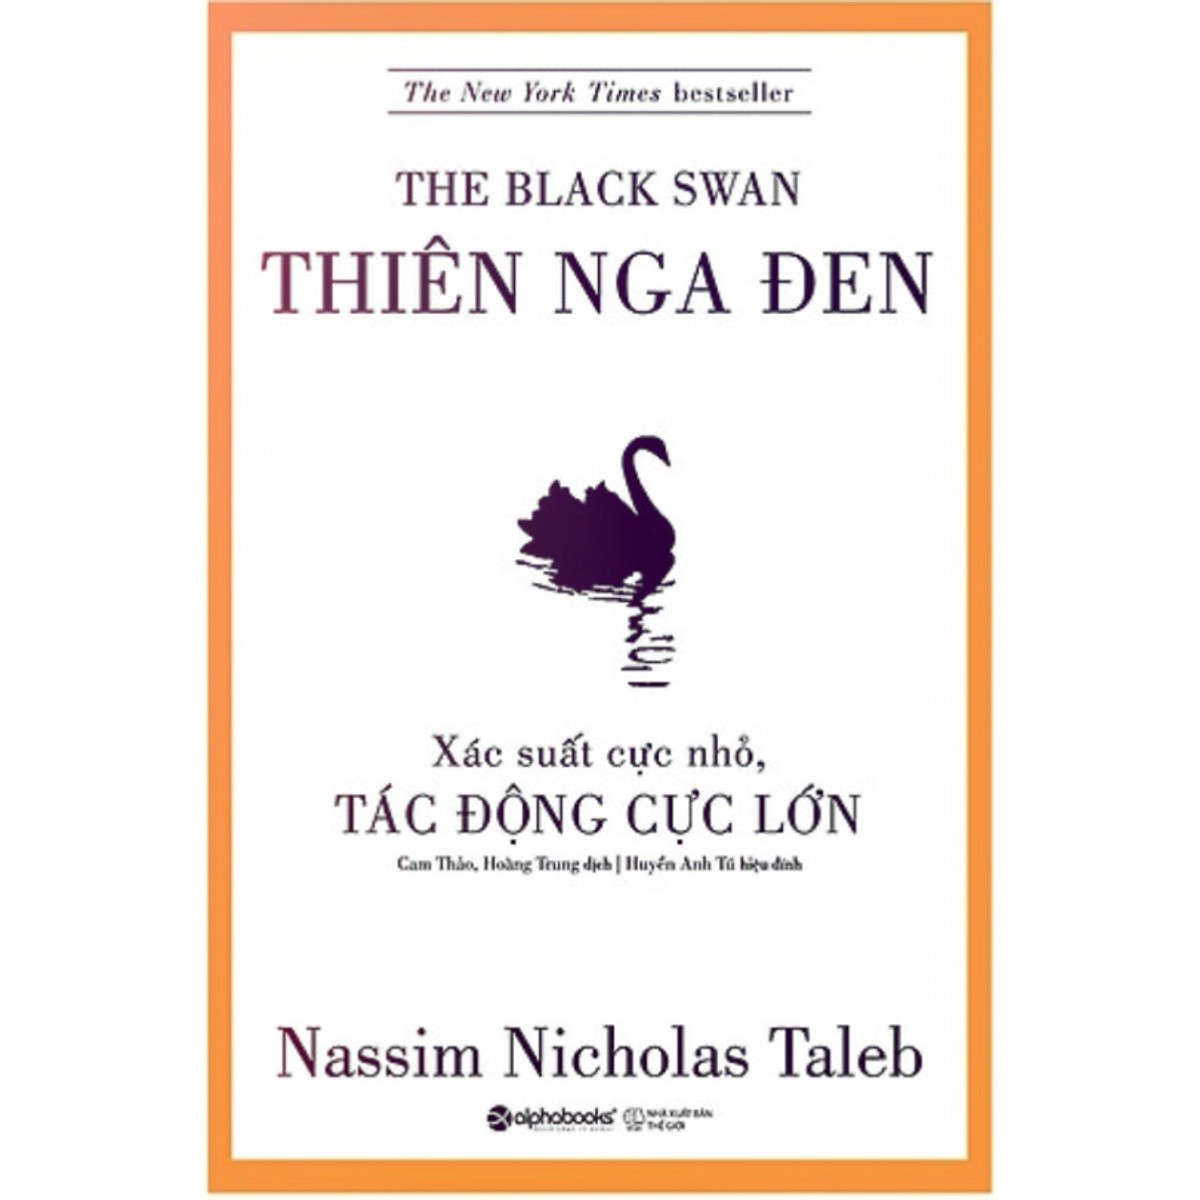 Hình ảnh Trọn Bộ 2 Cuốn Sách Của Tác Giả Nassim Nicholas Taleb ( Thiên Nga Đen + Da Thịt Trong Cuộc Chơi ) tặng kèm bookmark Sáng Tạo